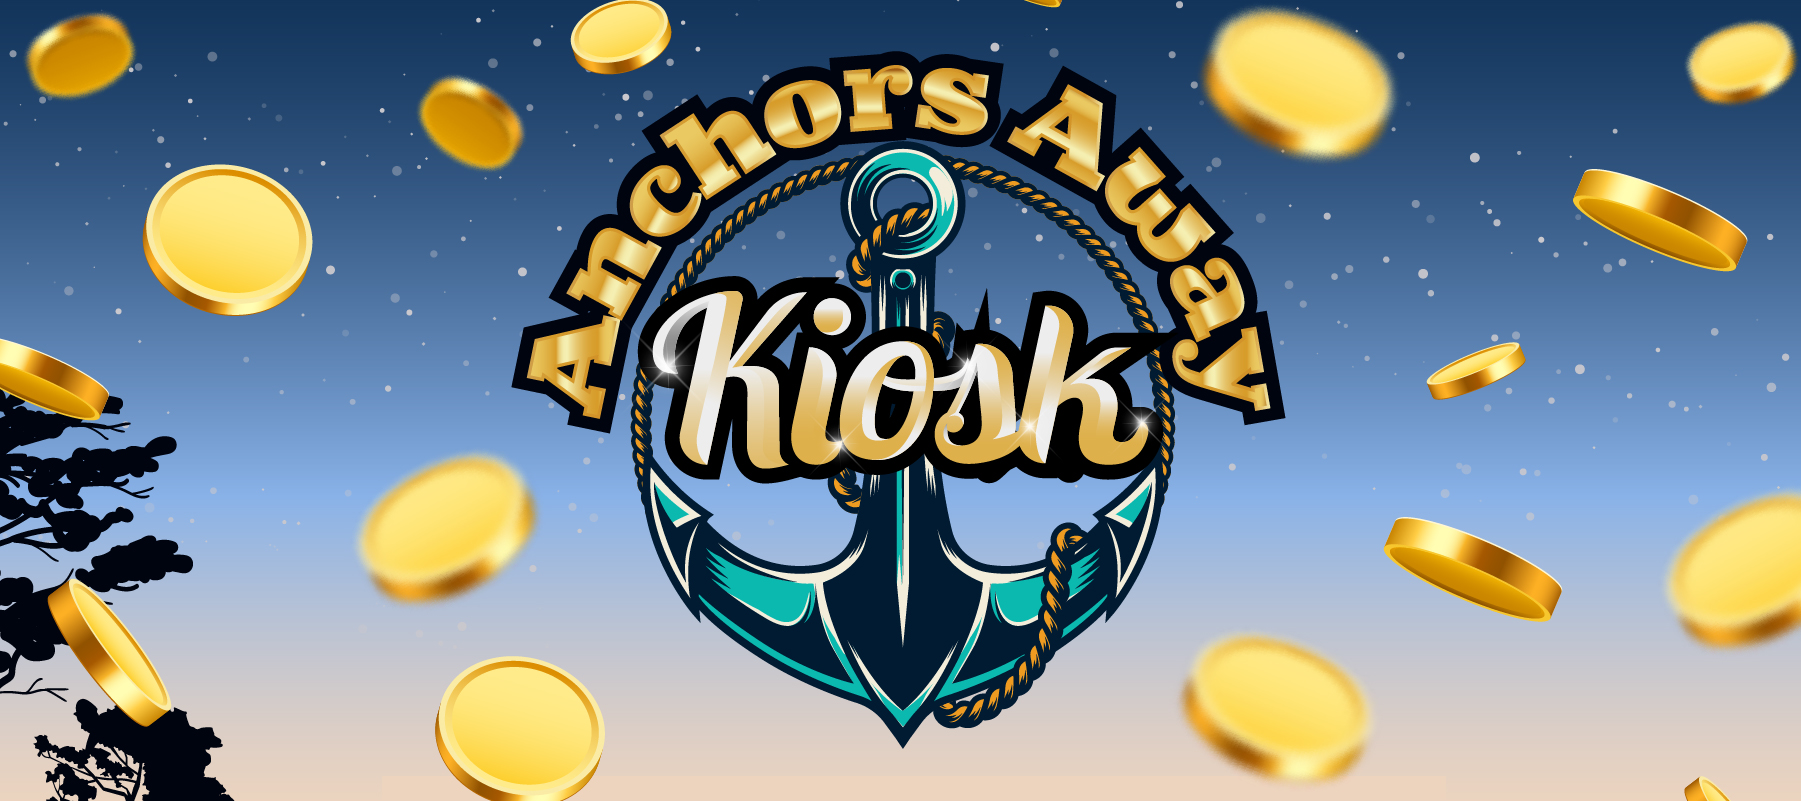 Anchors Away Kiosk